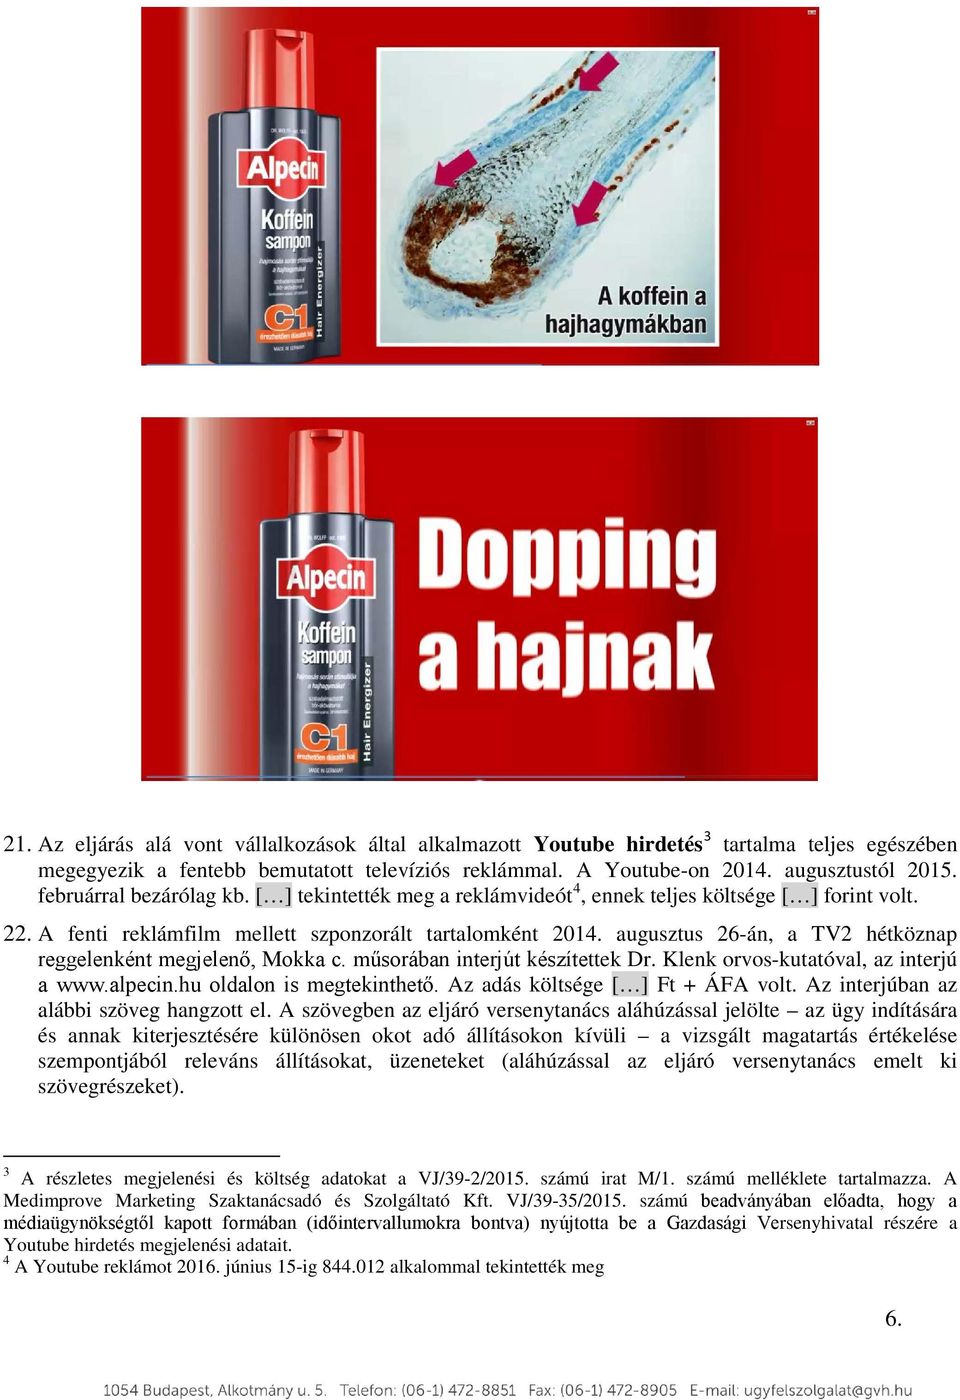 augusztus 26-án, a TV2 hétköznap reggelenként megjelenő, Mokka c. műsorában interjút készítettek Dr. Klenk orvos-kutatóval, az interjú a www.alpecin.hu oldalon is megtekinthető.